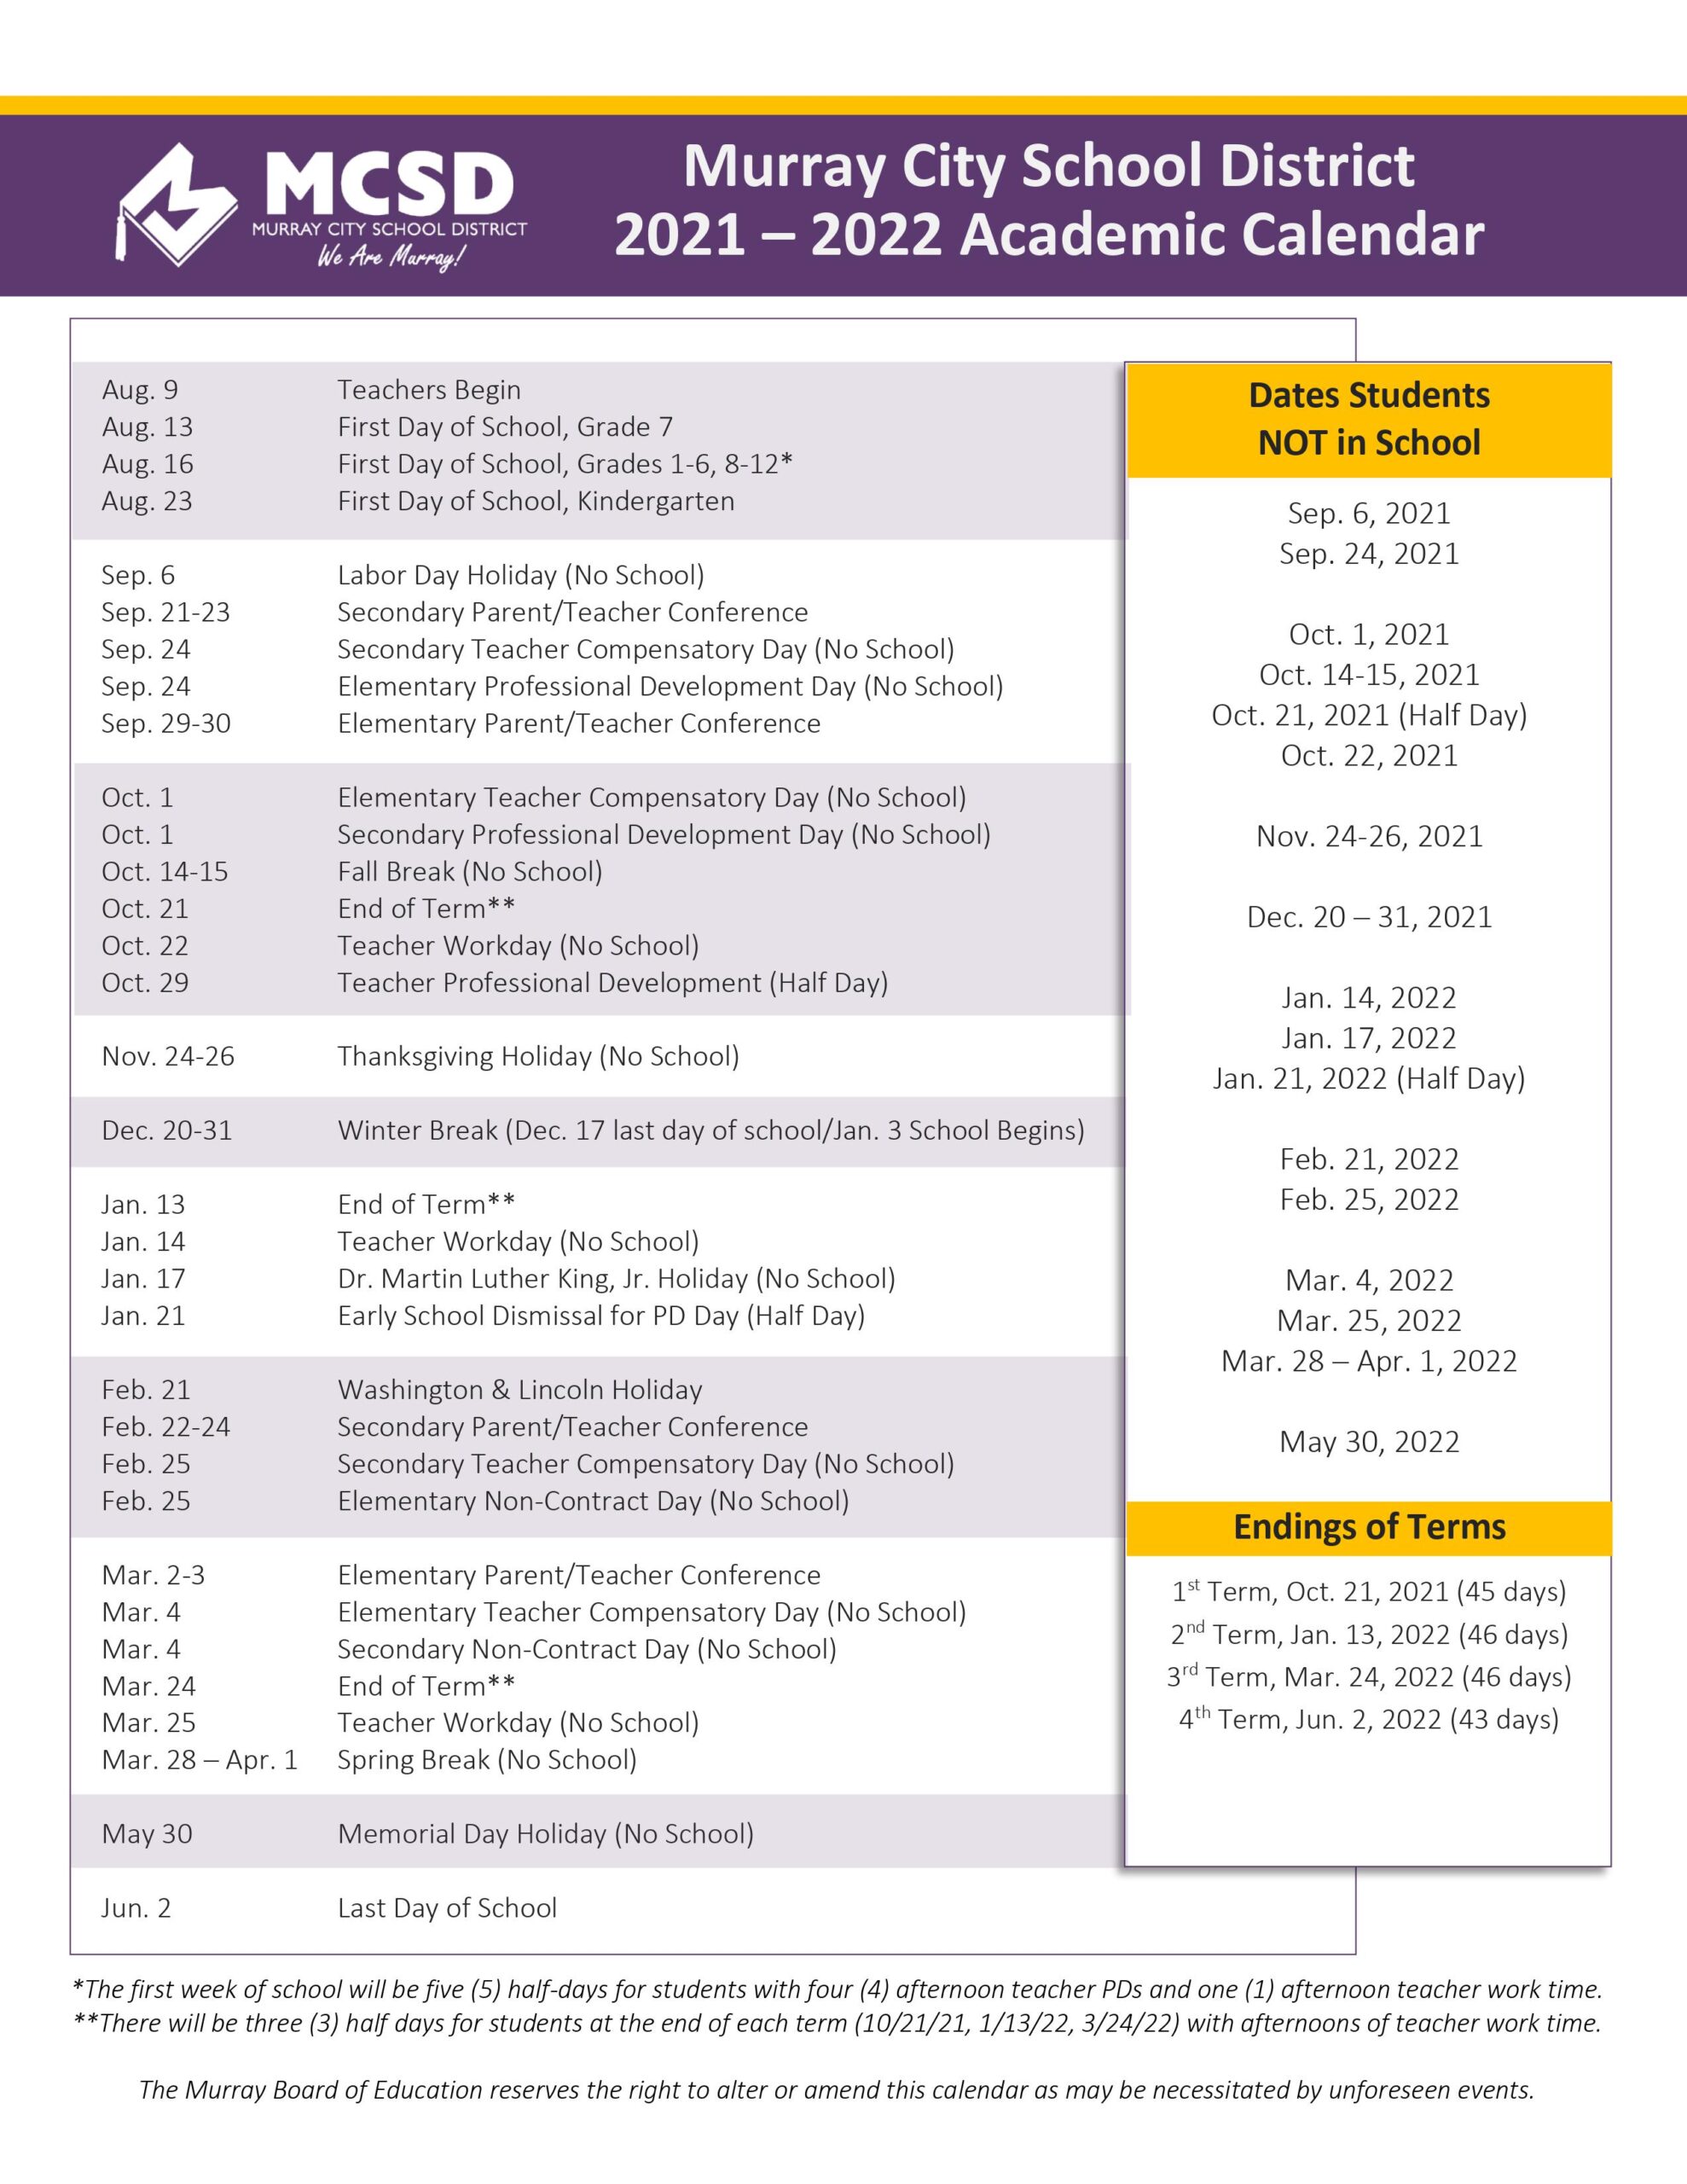 Mcsd Academic Calendar 2021-2022